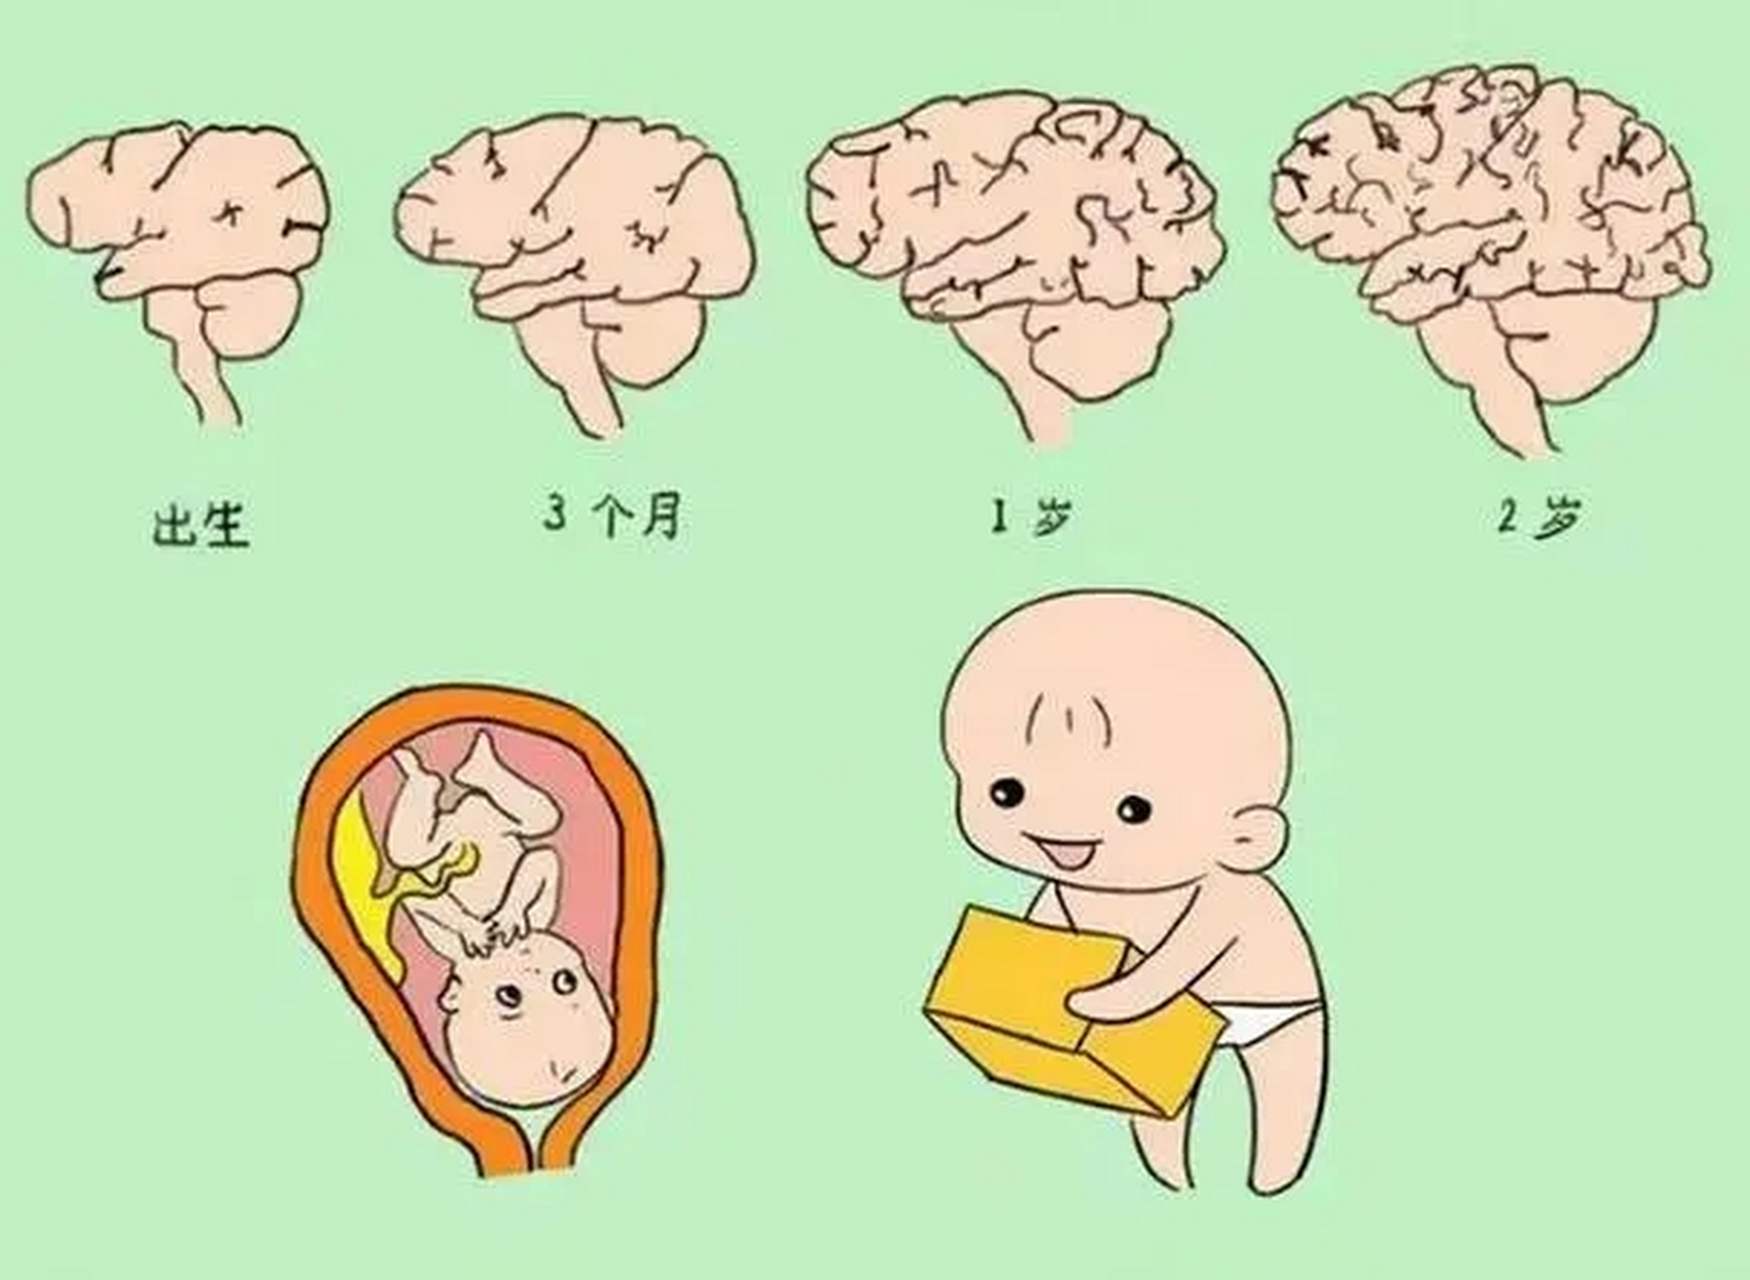 而早产孩子过早地脱离了子宫环境,大脑发育不够完善,脑细胞的数量和